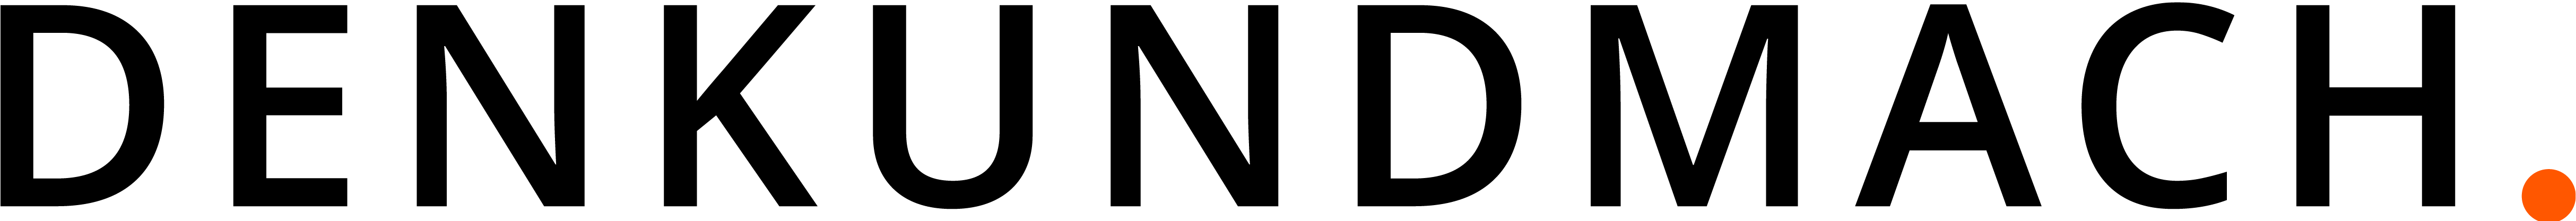 DENKUNDMACH logo